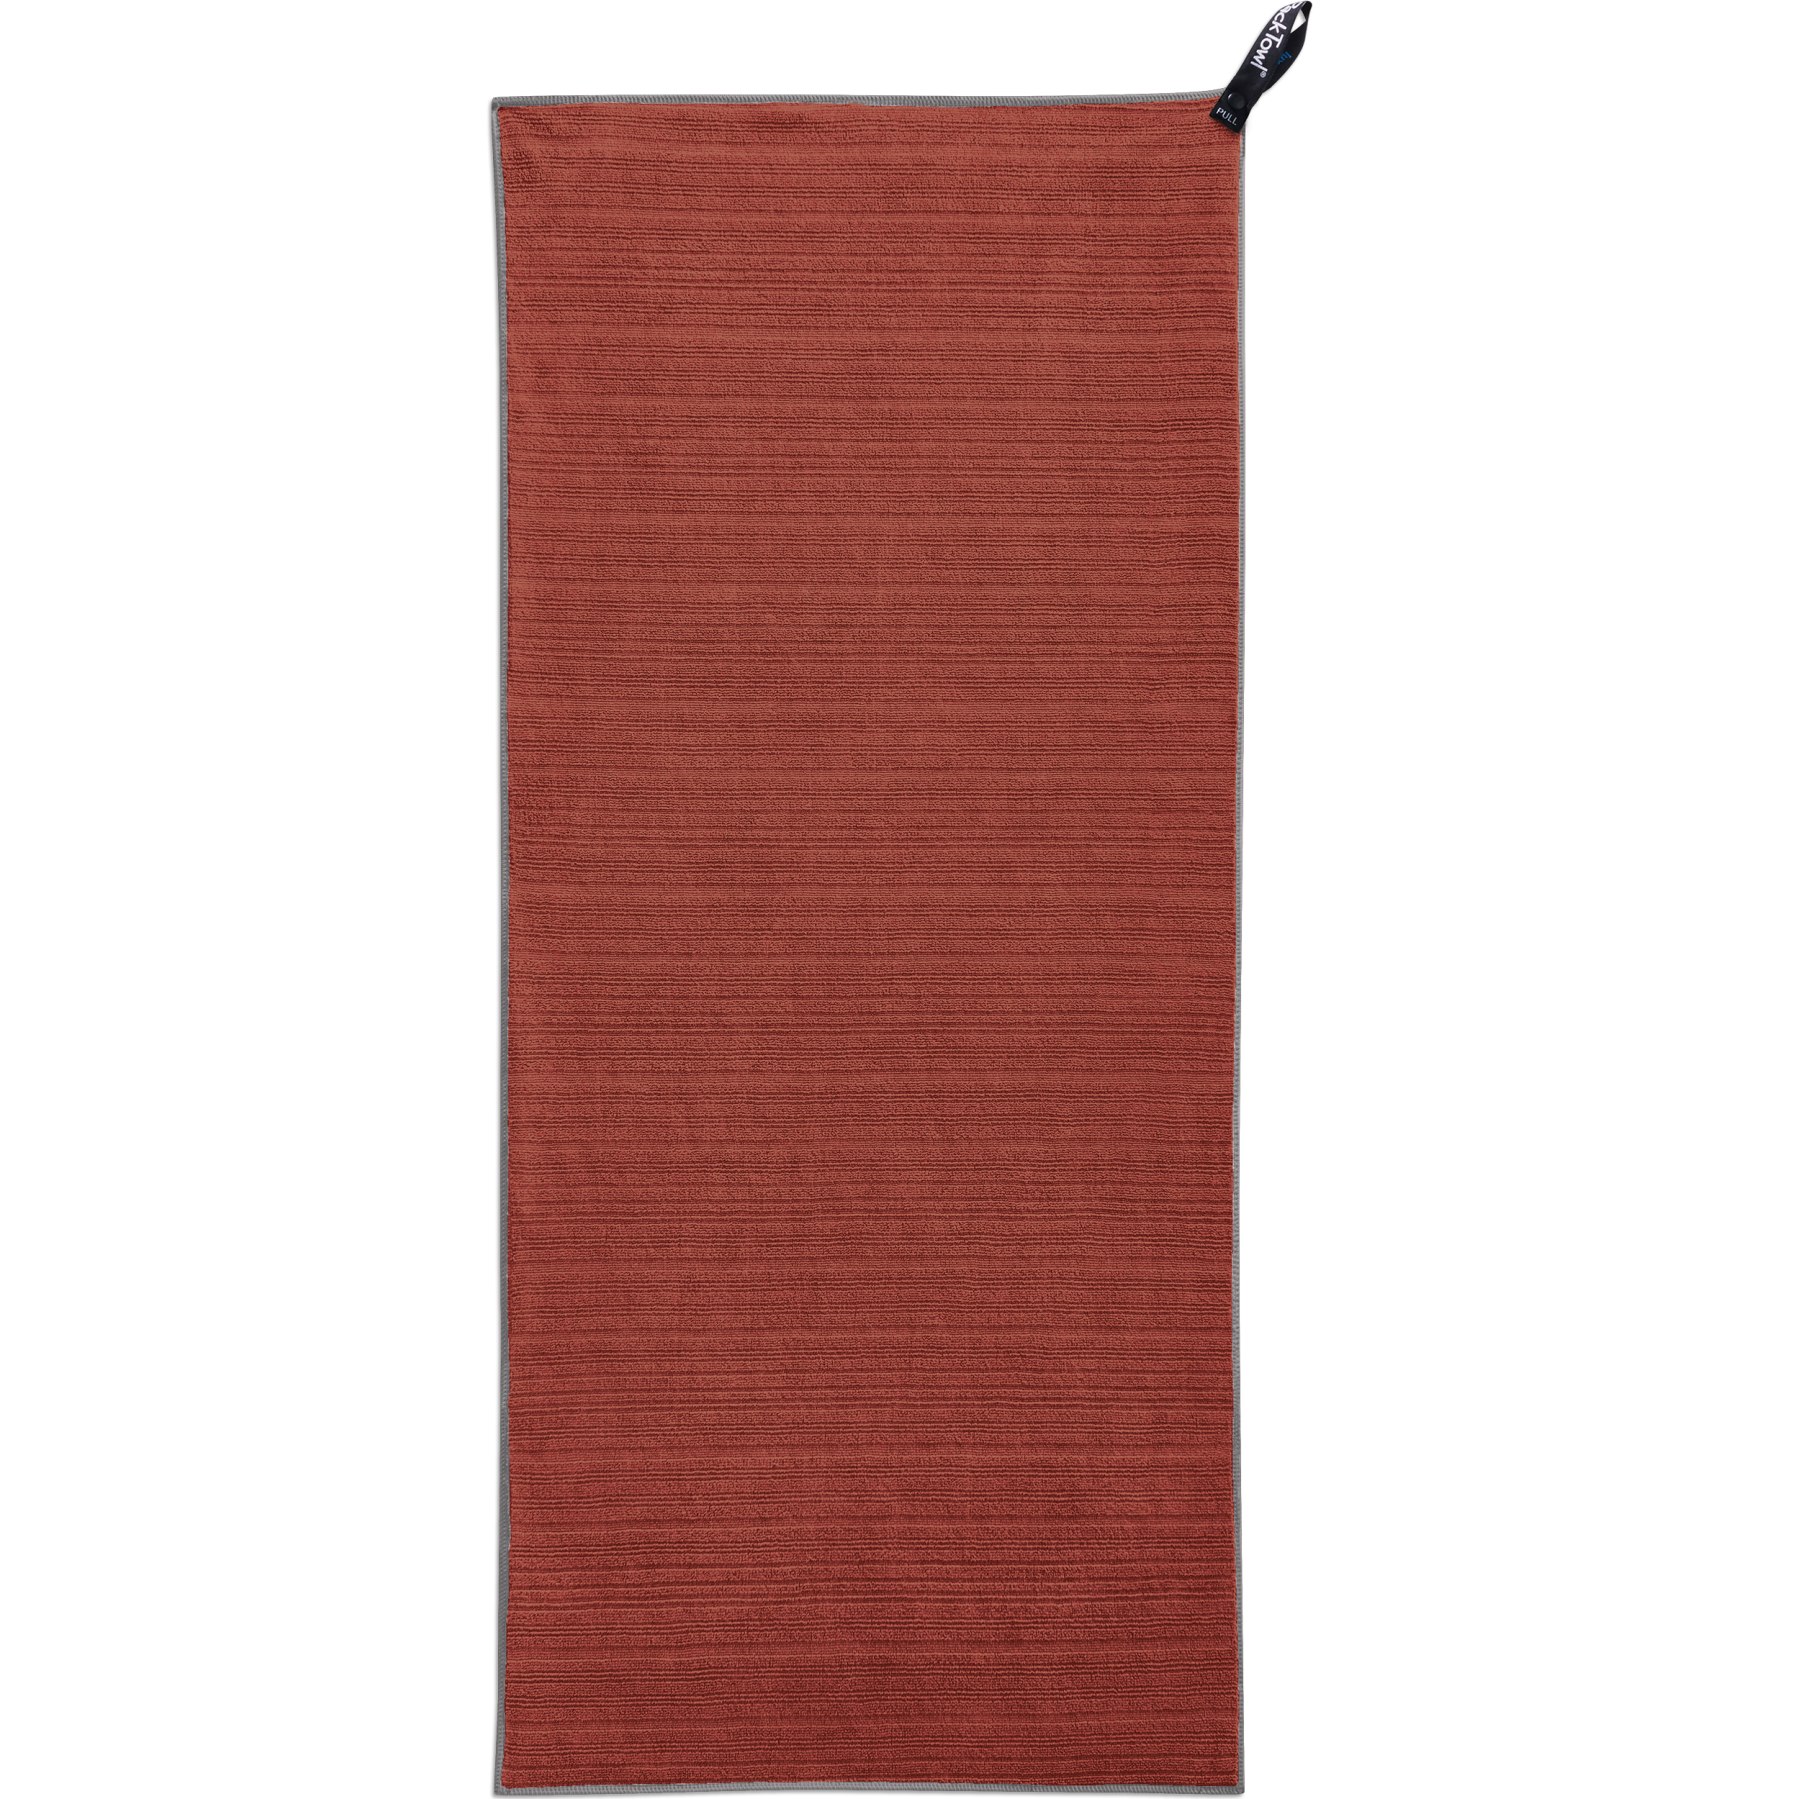 Productfoto van PackTowl Luxe Hand Handdoek - terracotta